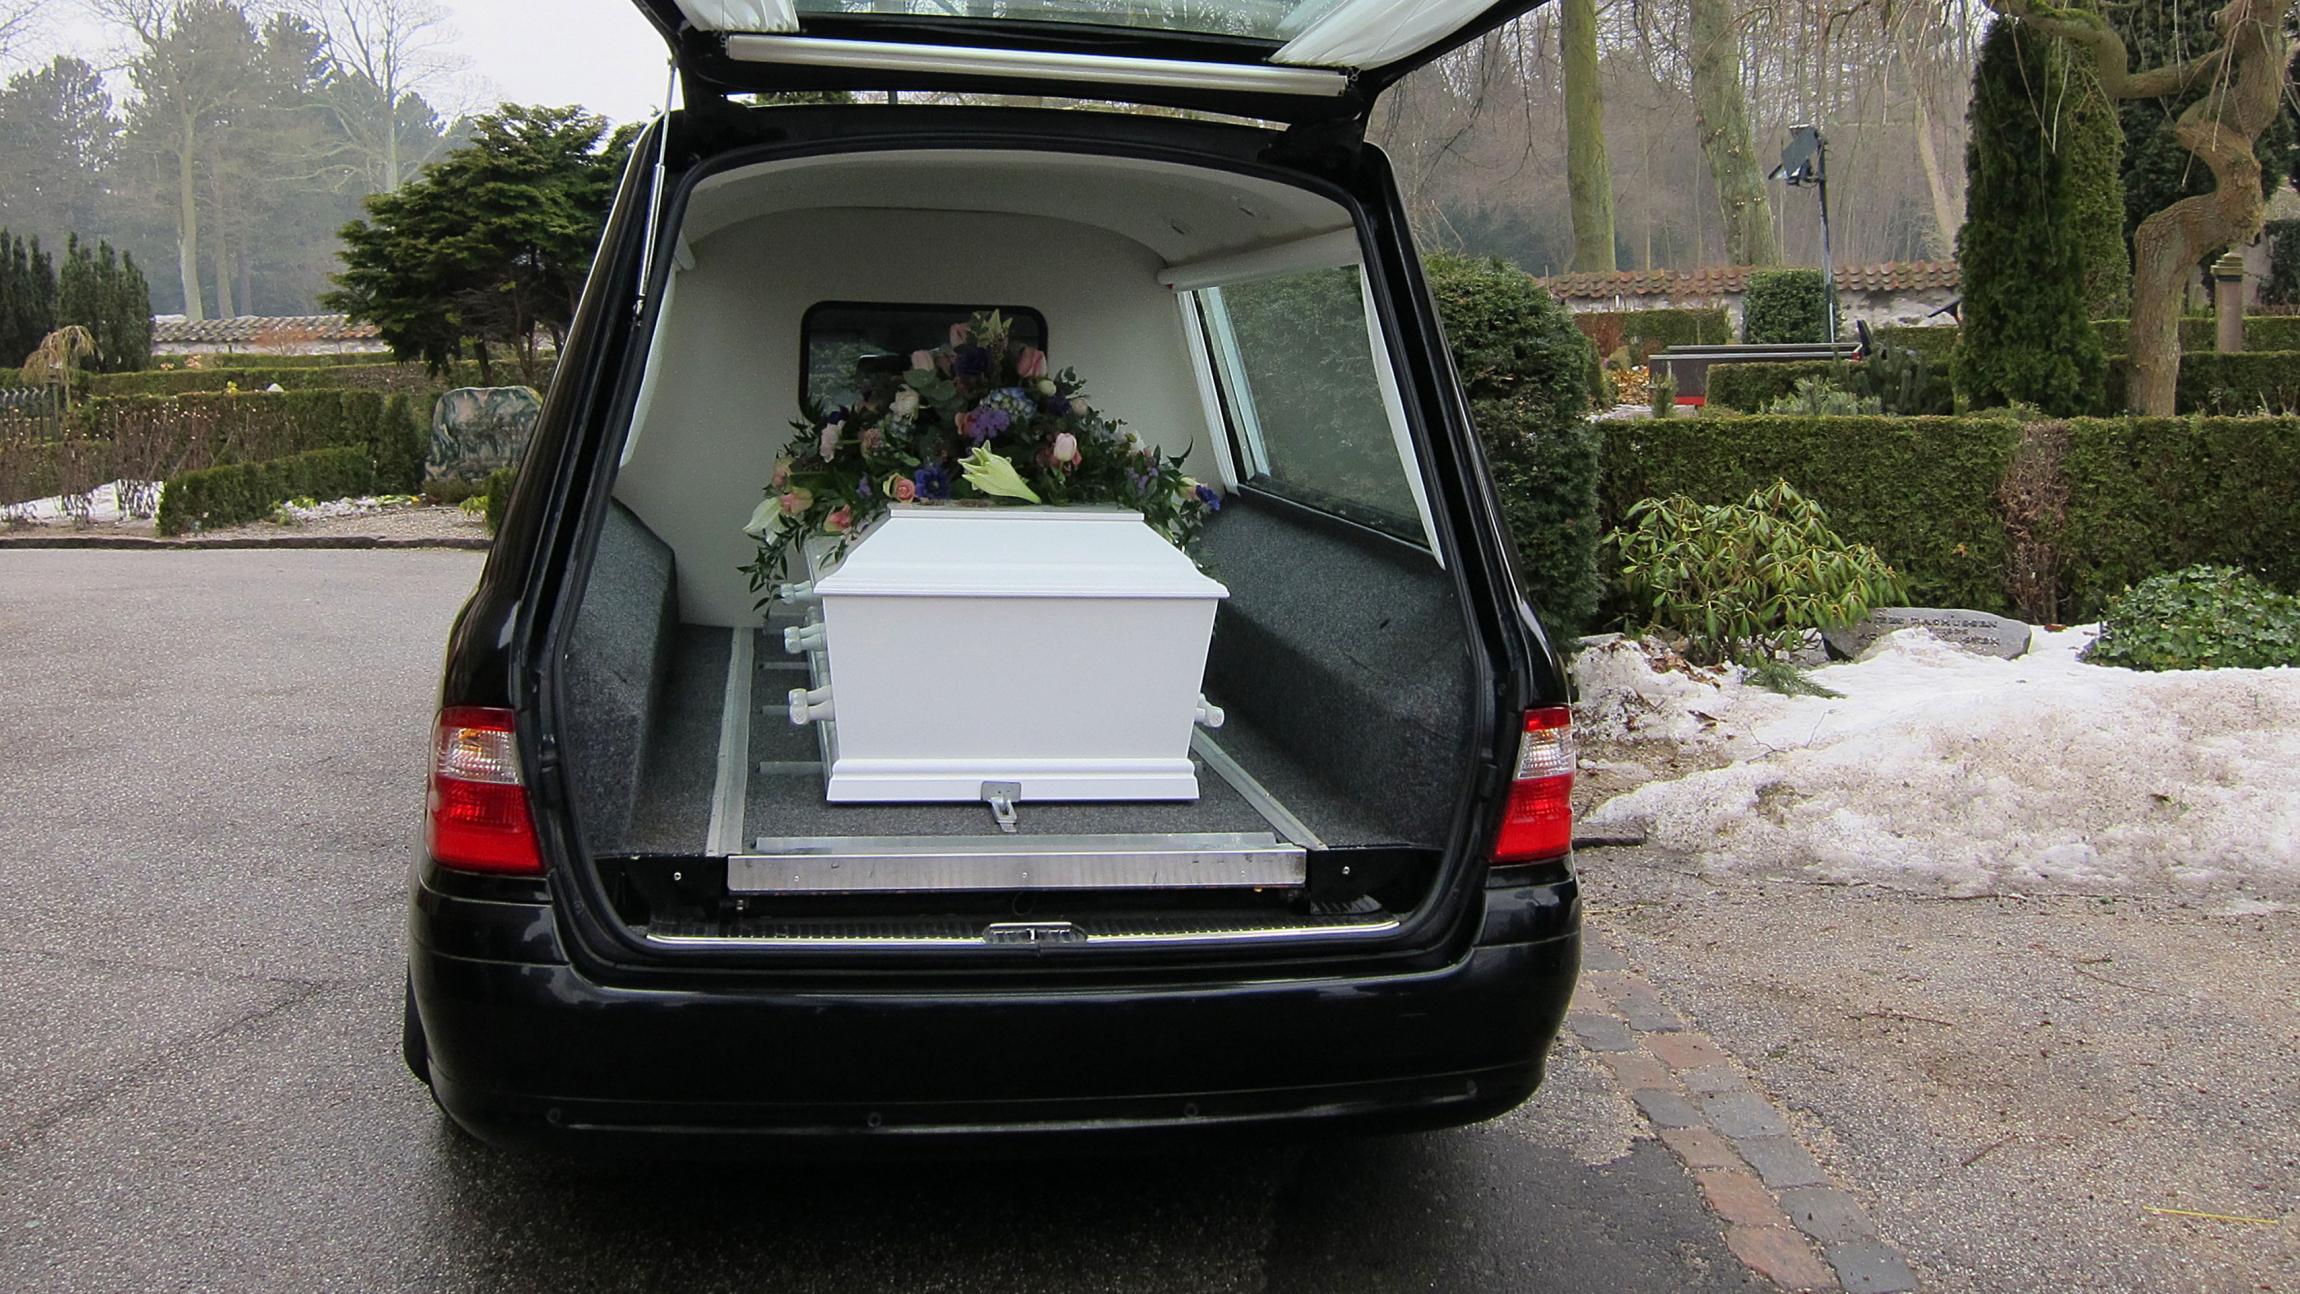 Hvad forskellen bisættelse en begravelse? | Samvirke